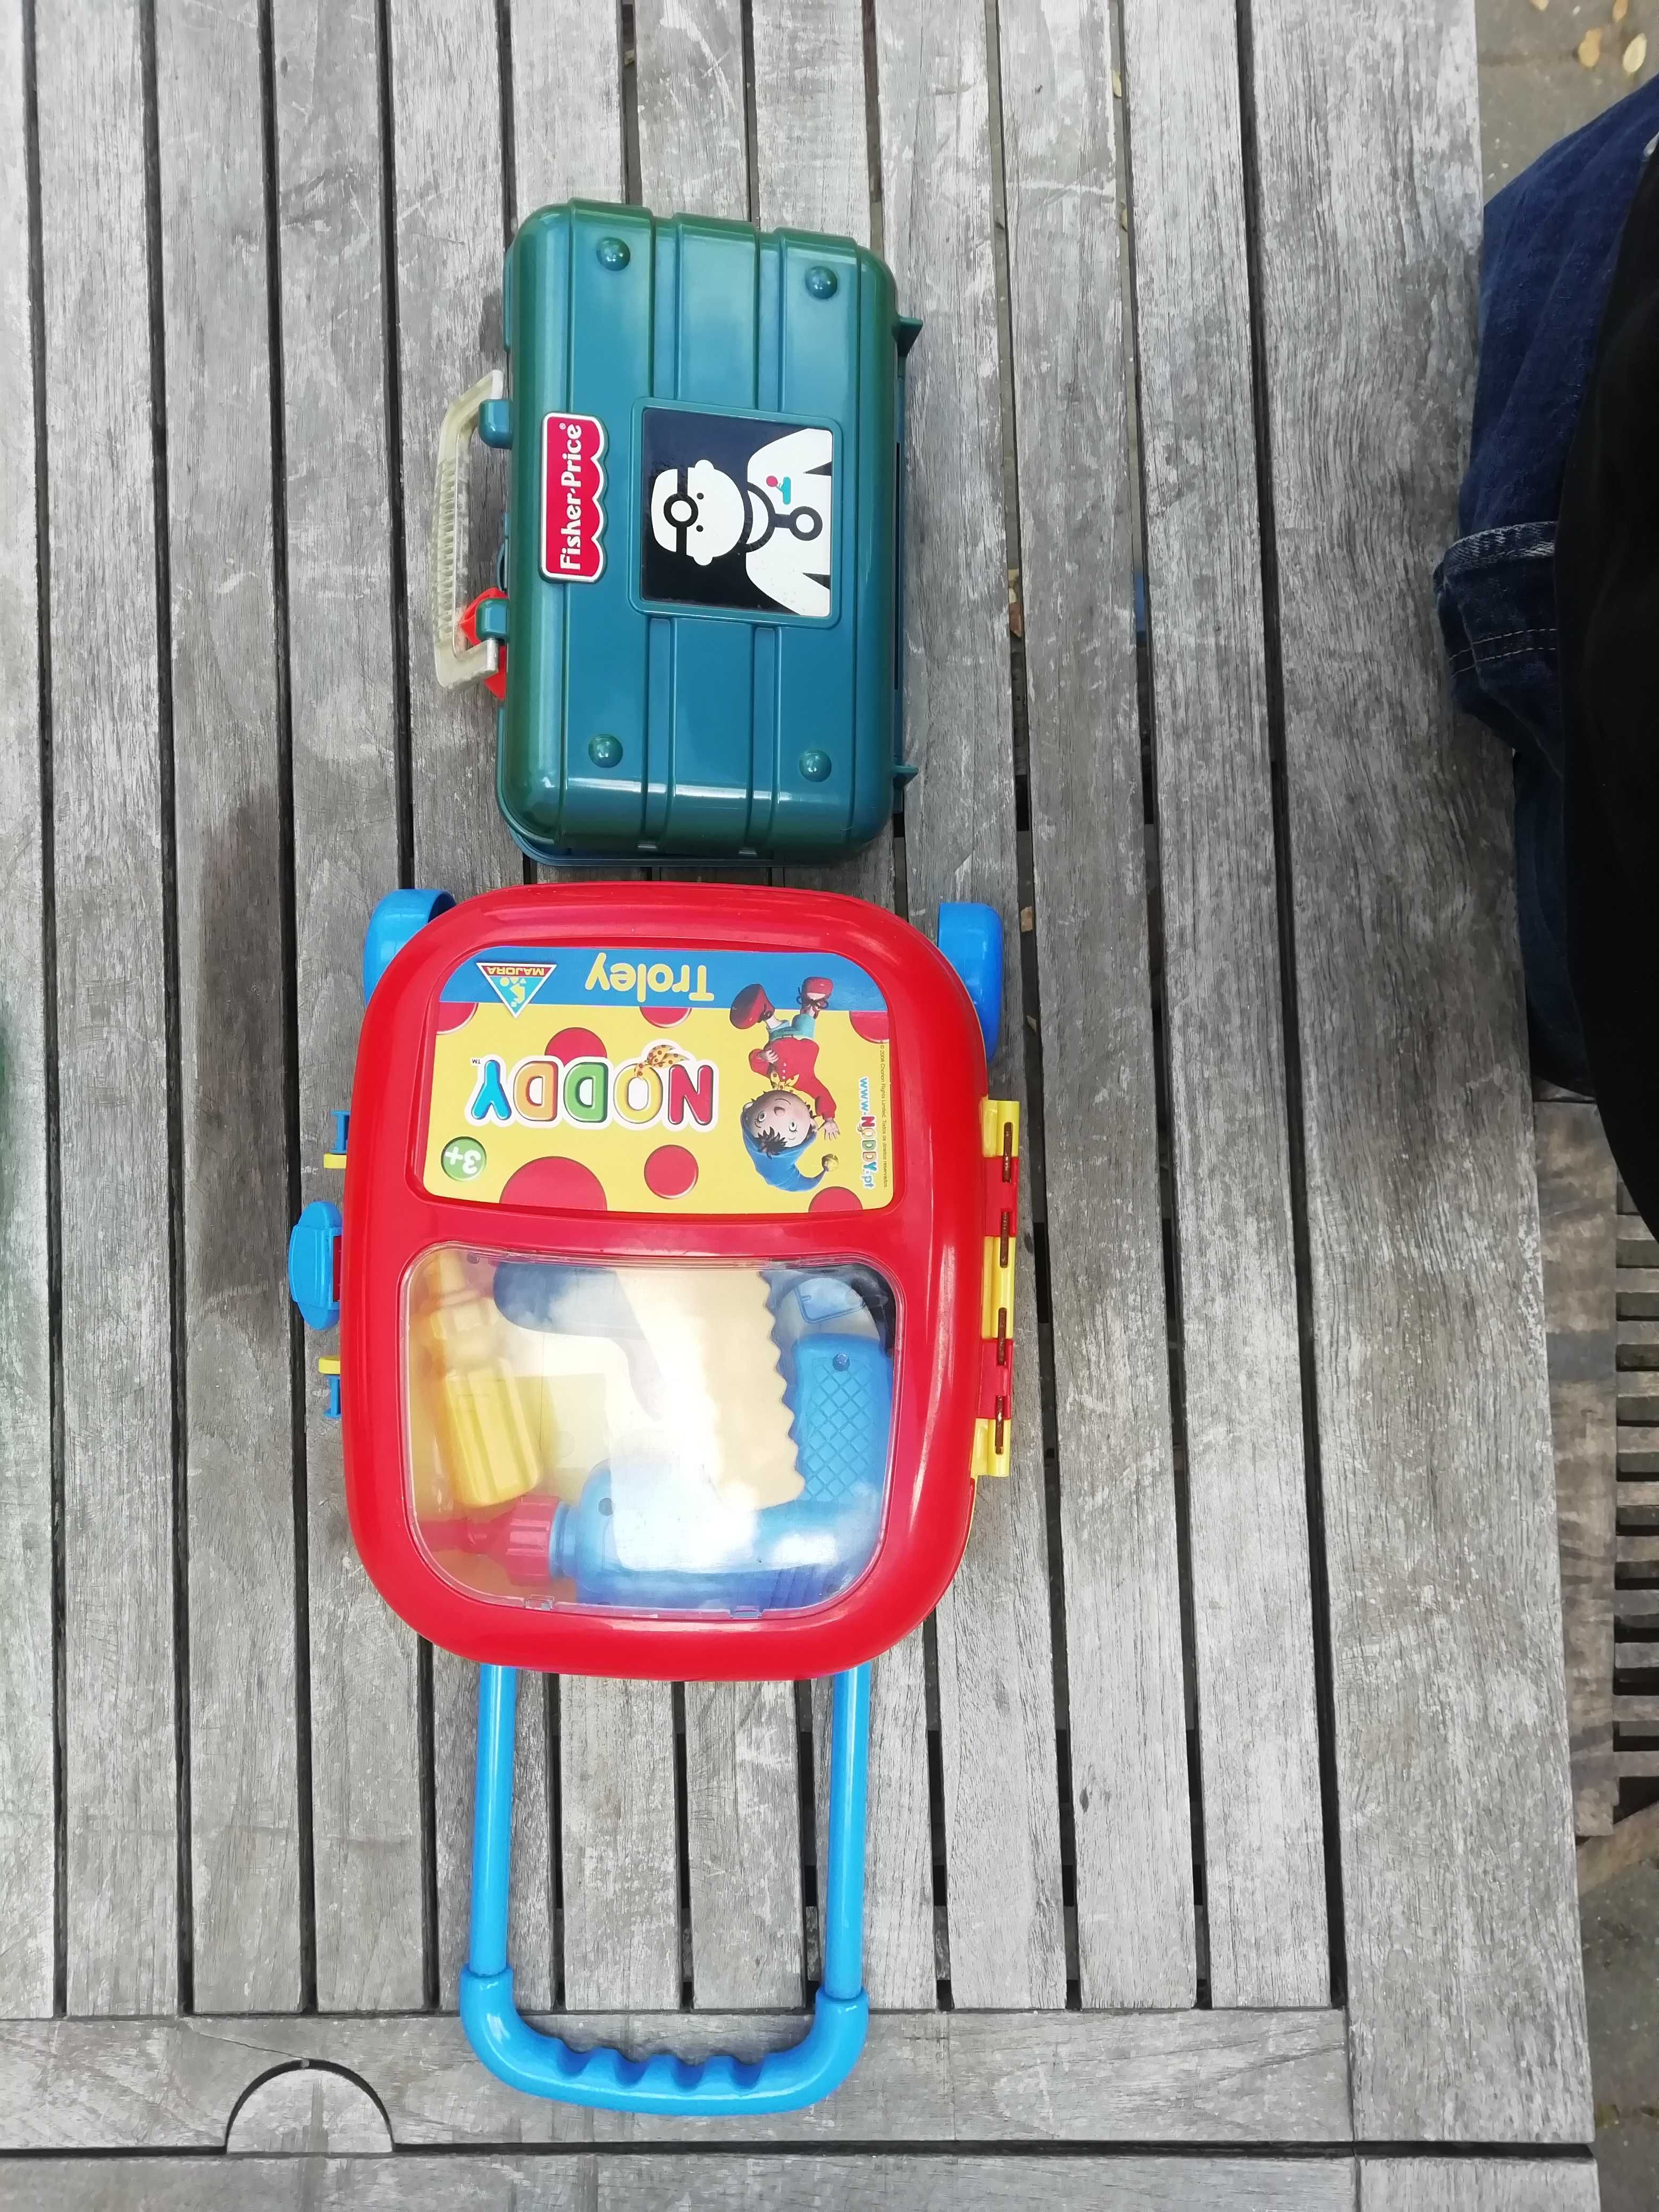 Brinquedos - 2 kits (ferramentas + aparelhos médicos). Para crianças